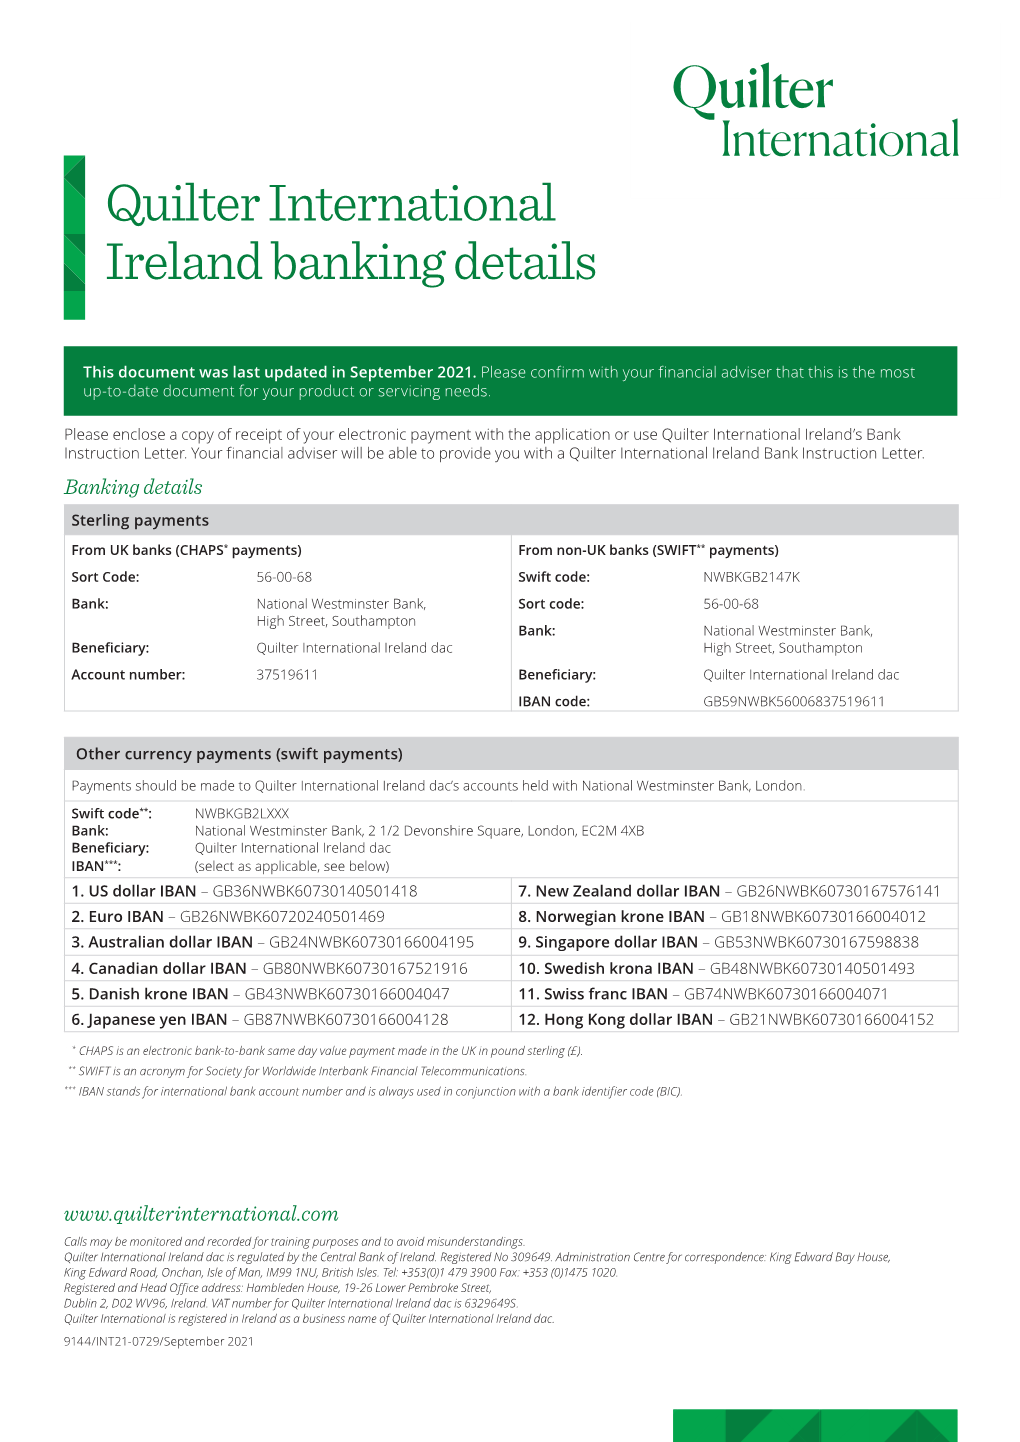 Quilter International Ireland Banking Details